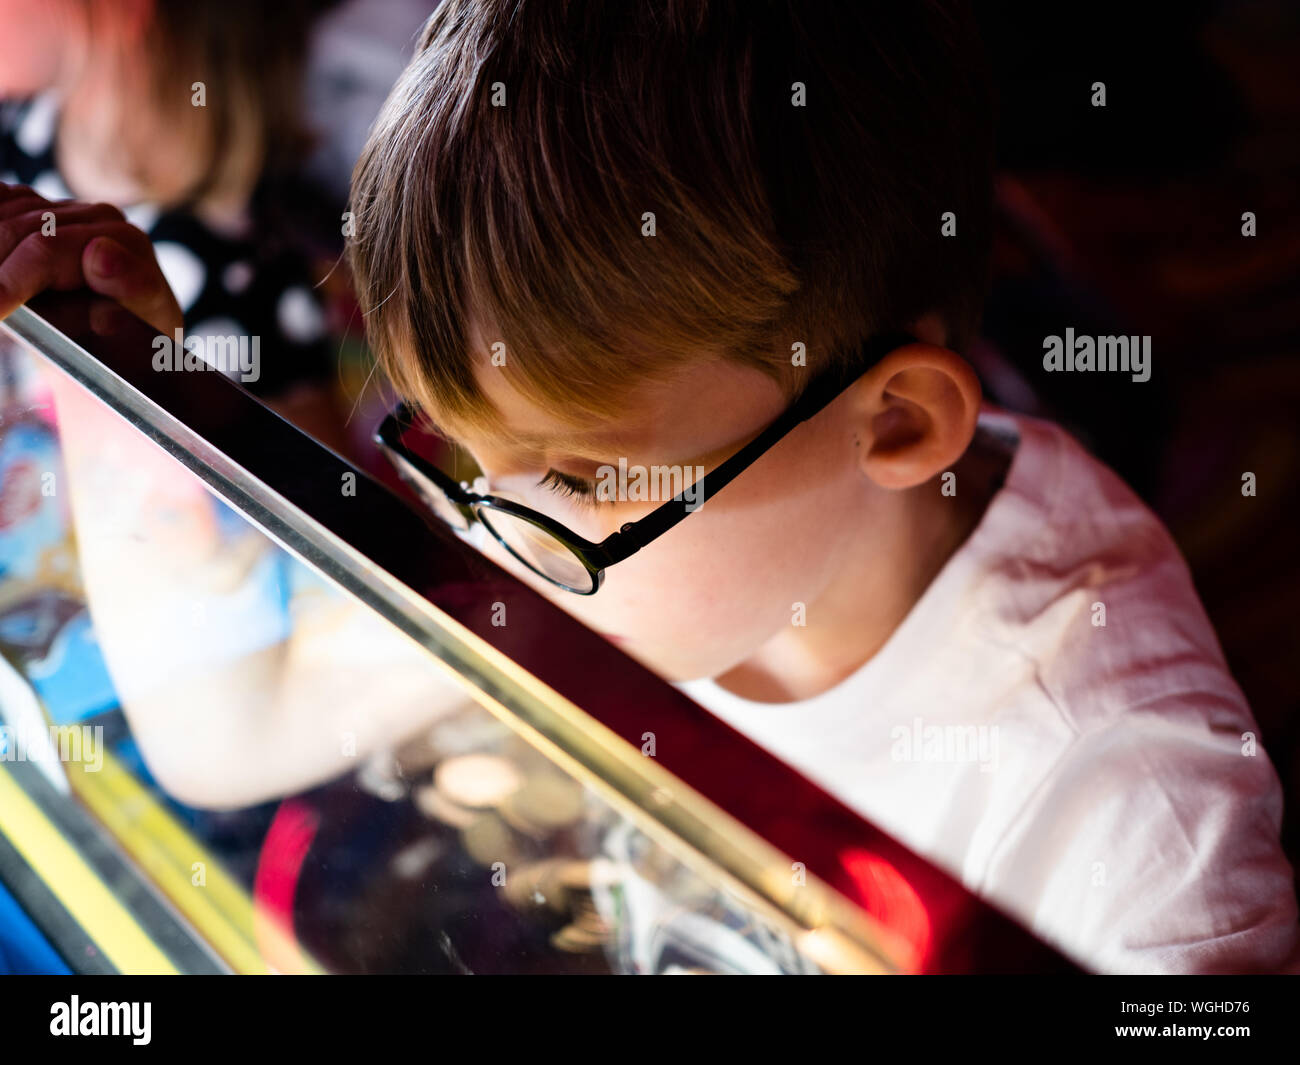 Eine 5-jährige blonde Junge Brillen Uhren aufmerksam, während ein 2p Coin slot maschine spielen an einer britischen Küstenstadt Arcade. Stockfoto